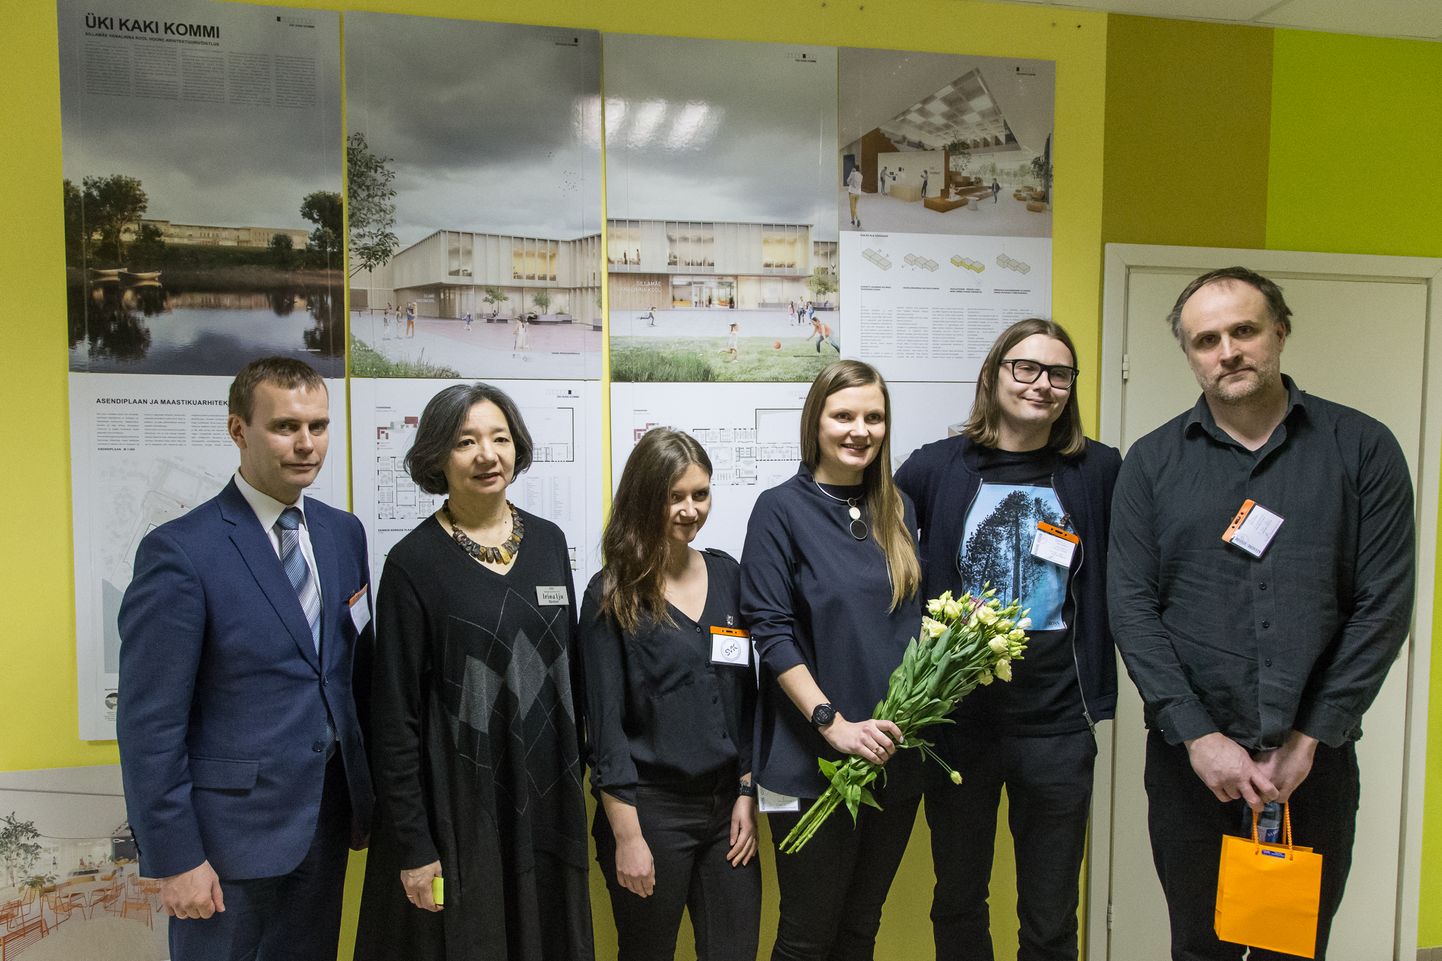 Sillamäe linnapea Tõnis Kalberg, Vanalinna kooli direktor Irina Lju ja osa võidukast arhitektide meeskonnast, taustaks ideekavand "Üki kaki kommi".